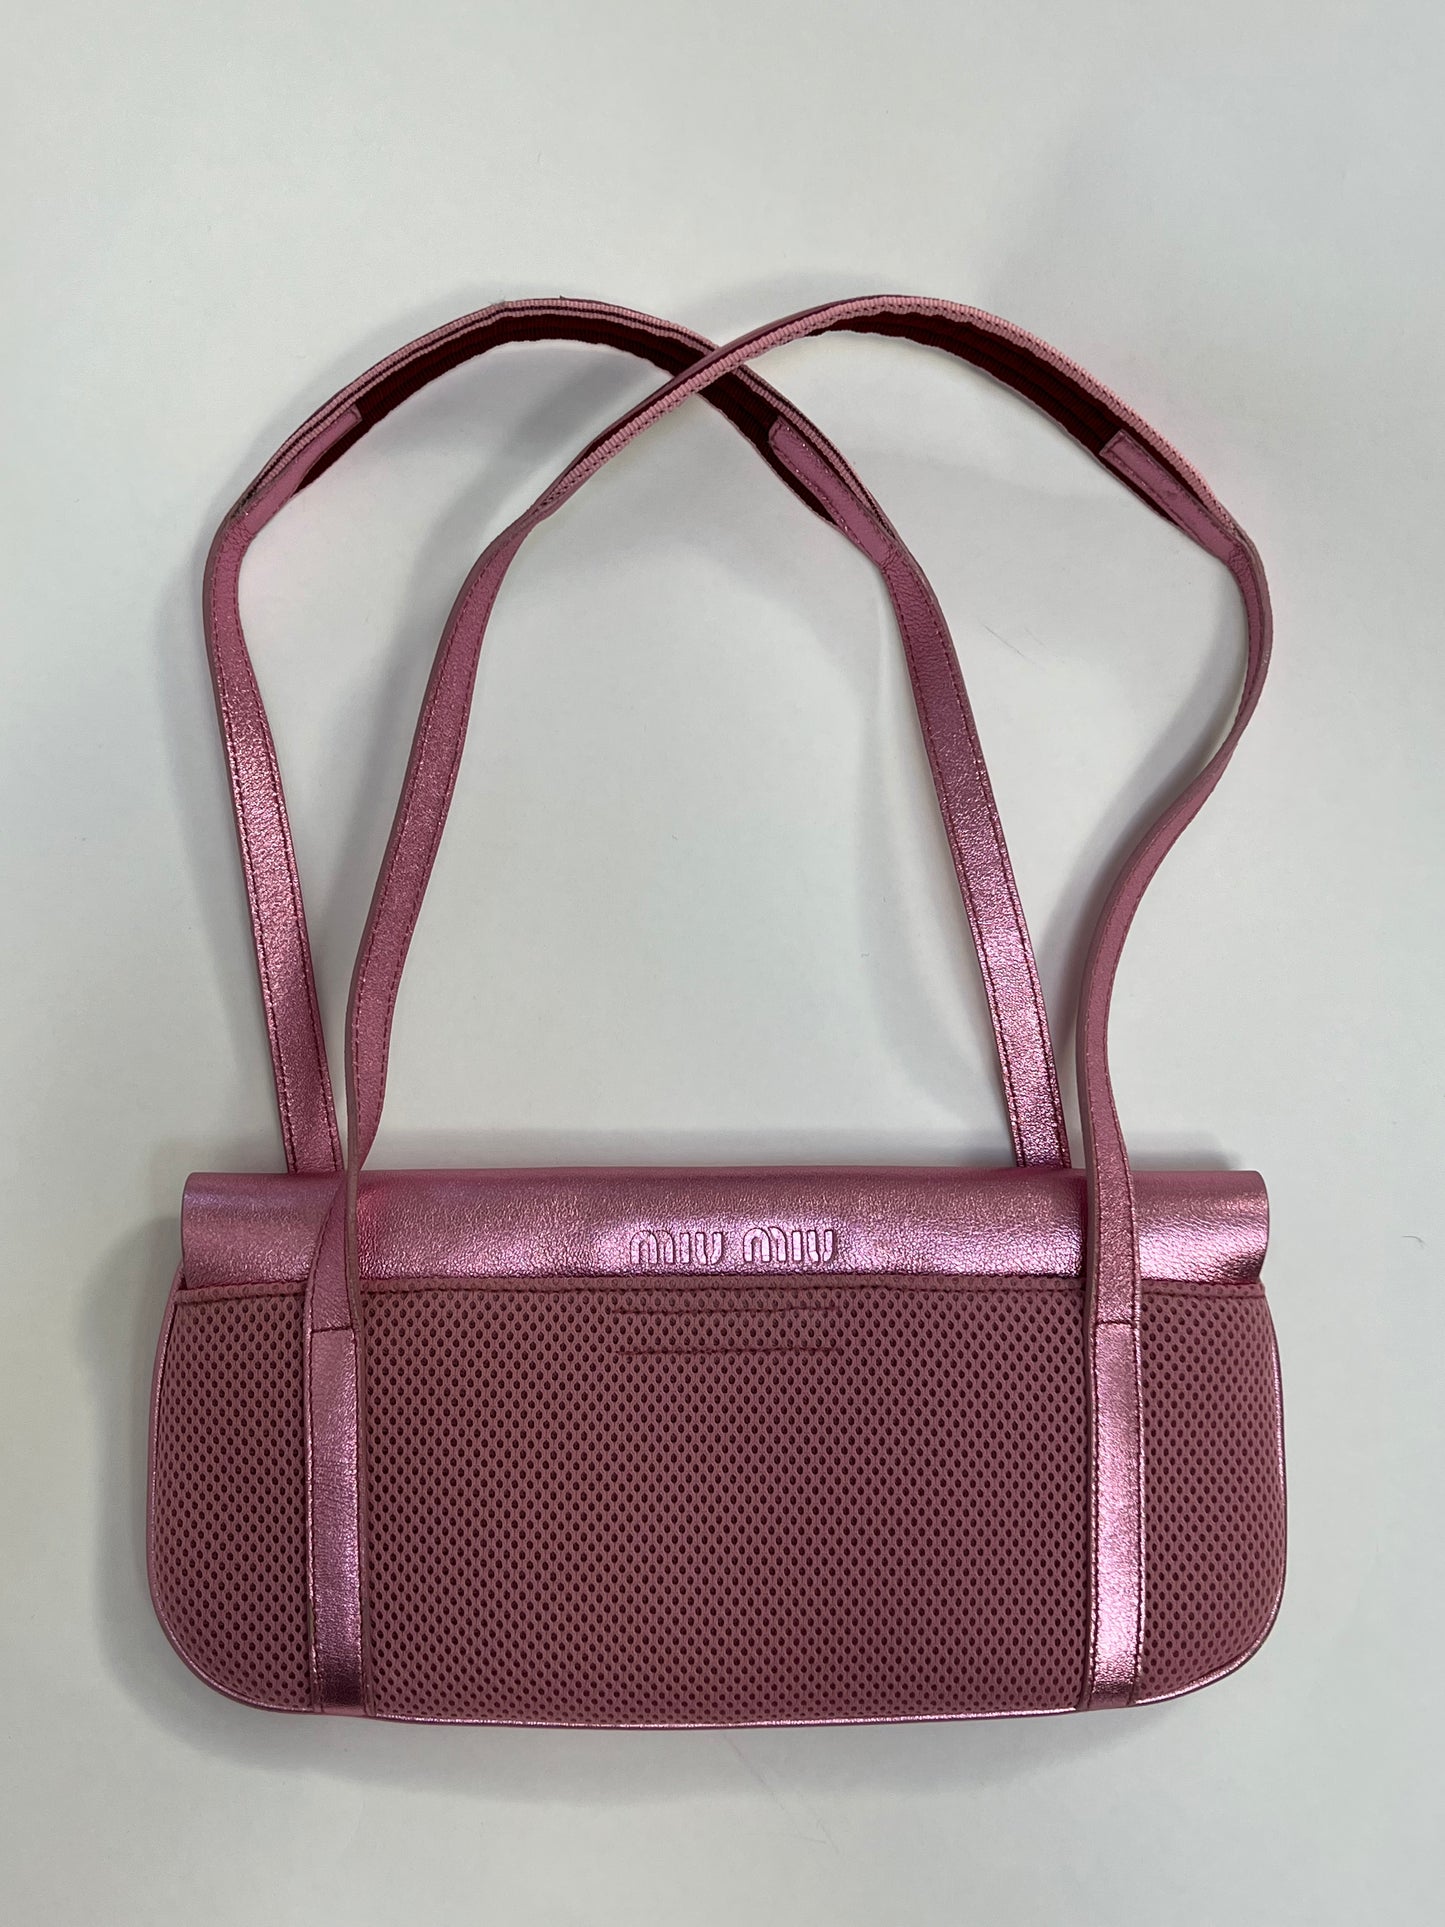 Miu Miu SS 2000 pink bag